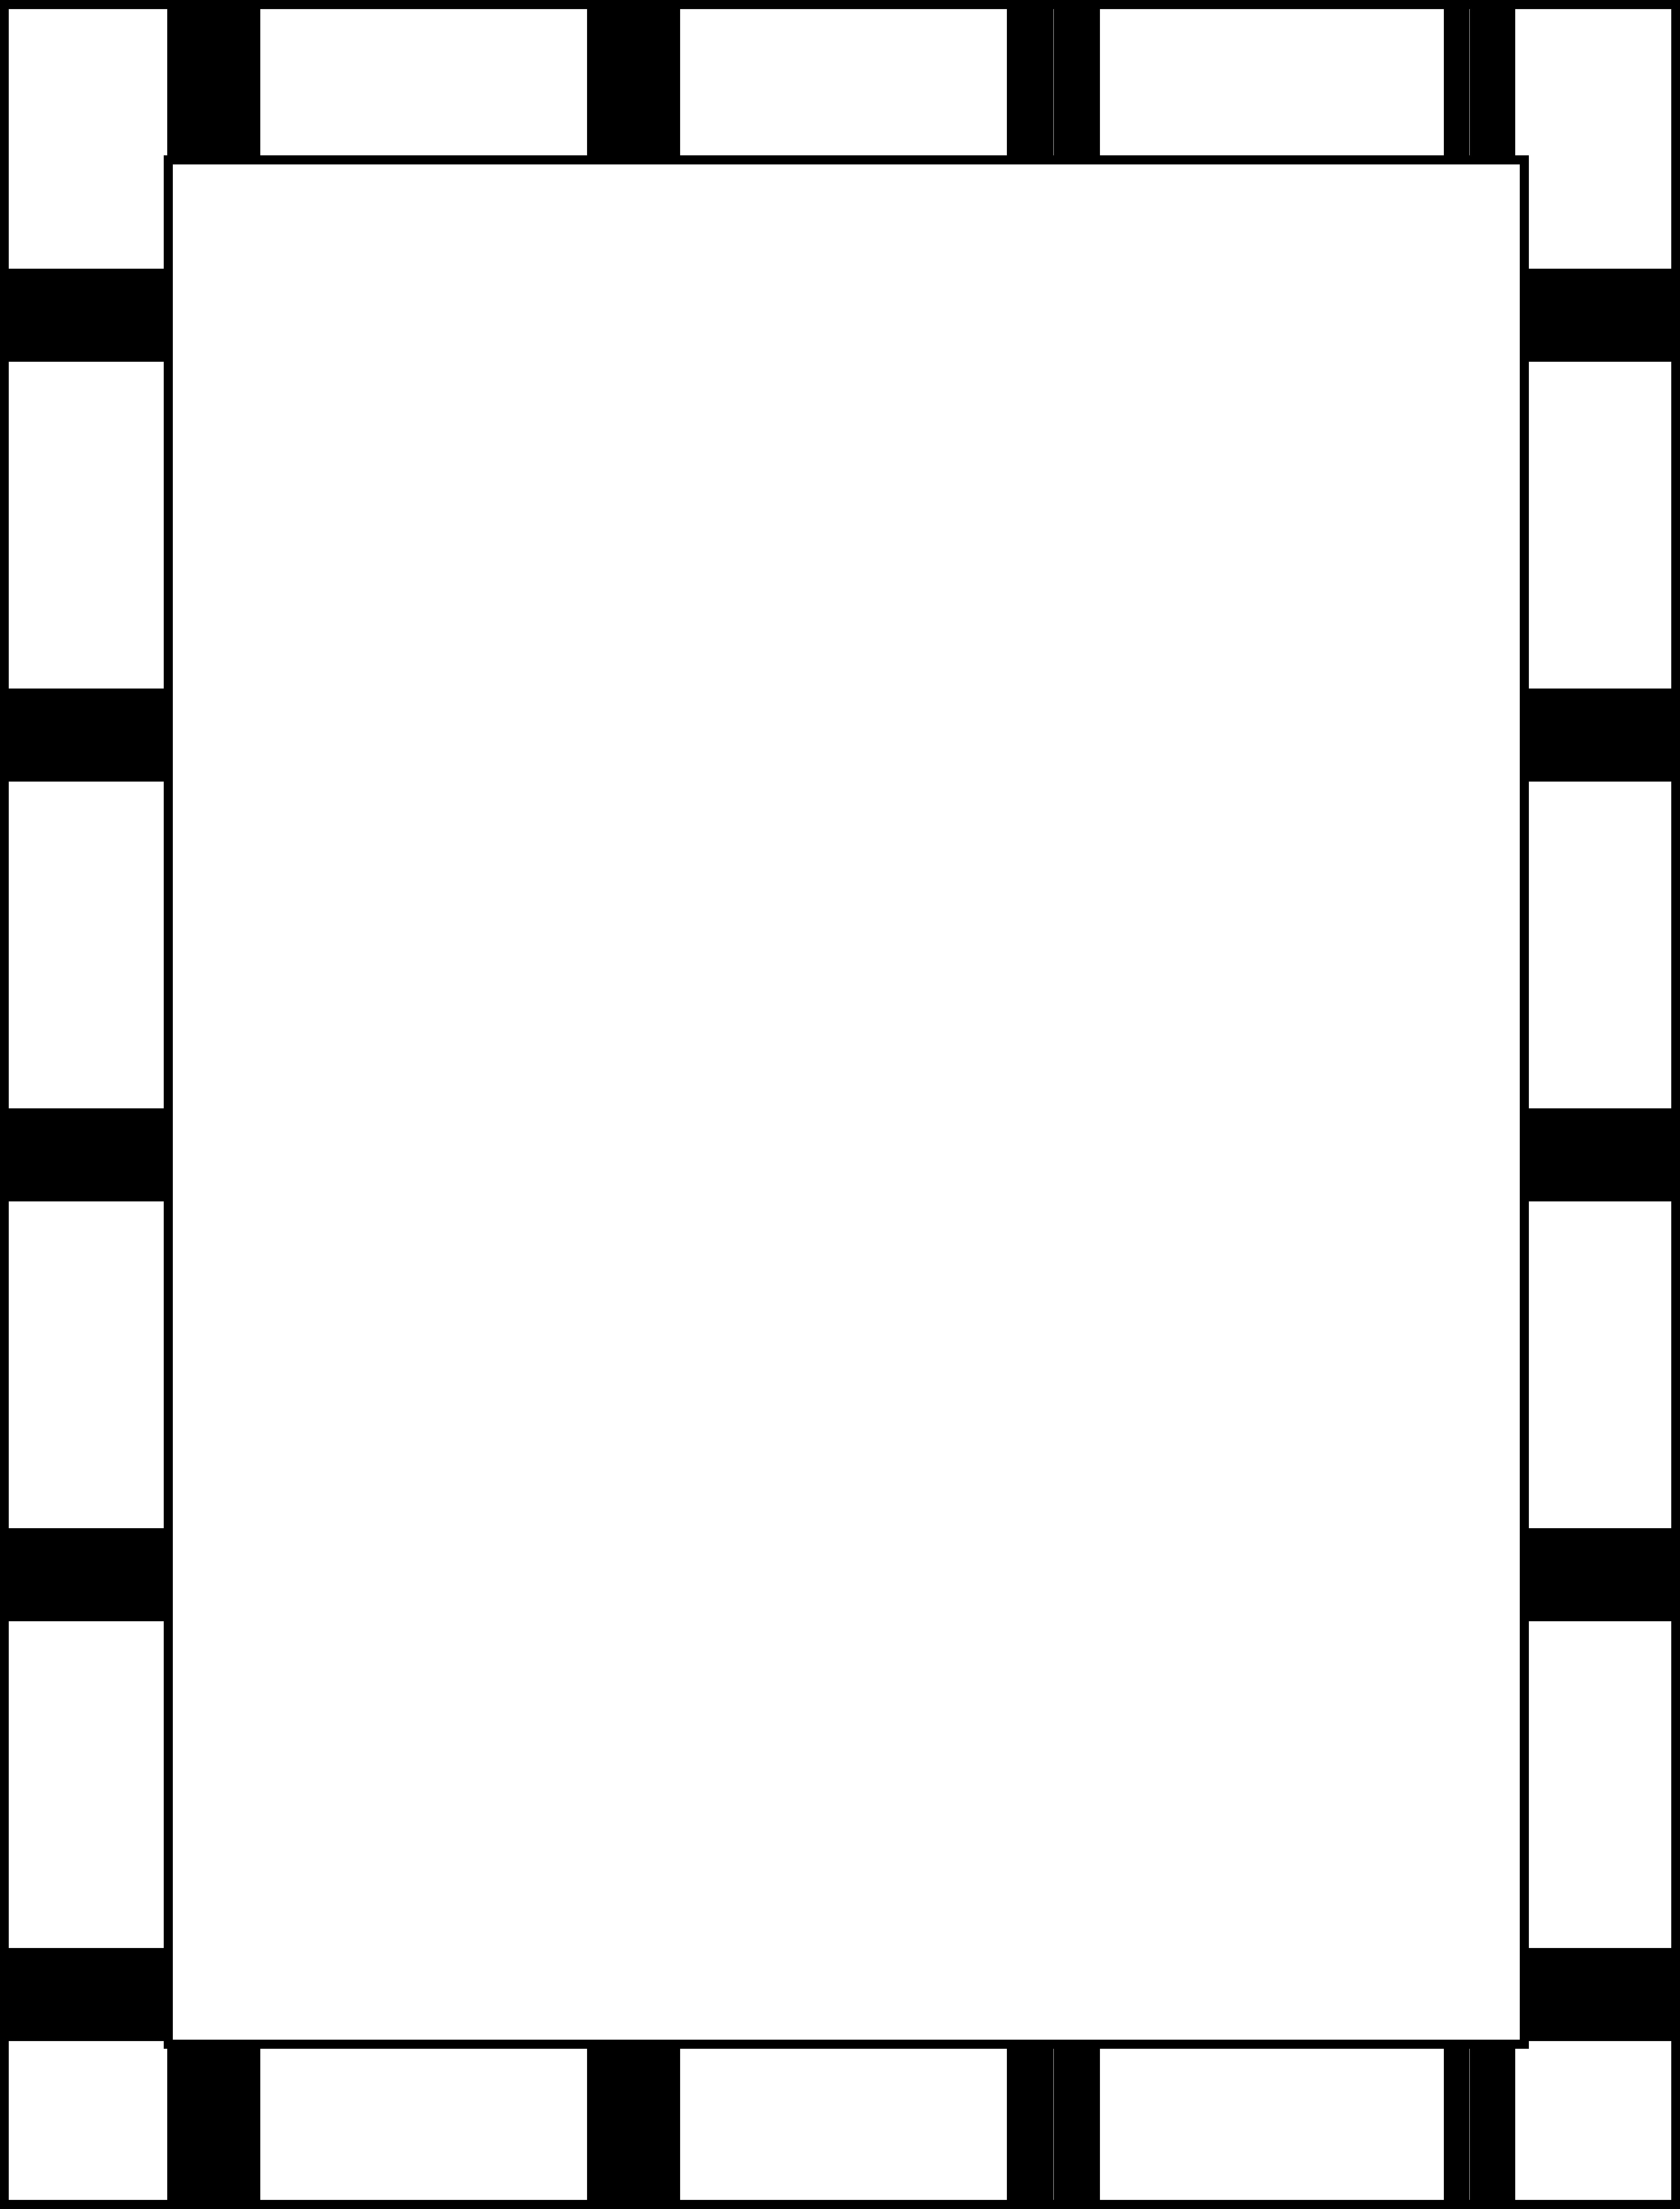 Black and white striped clipart border - ClipartFox